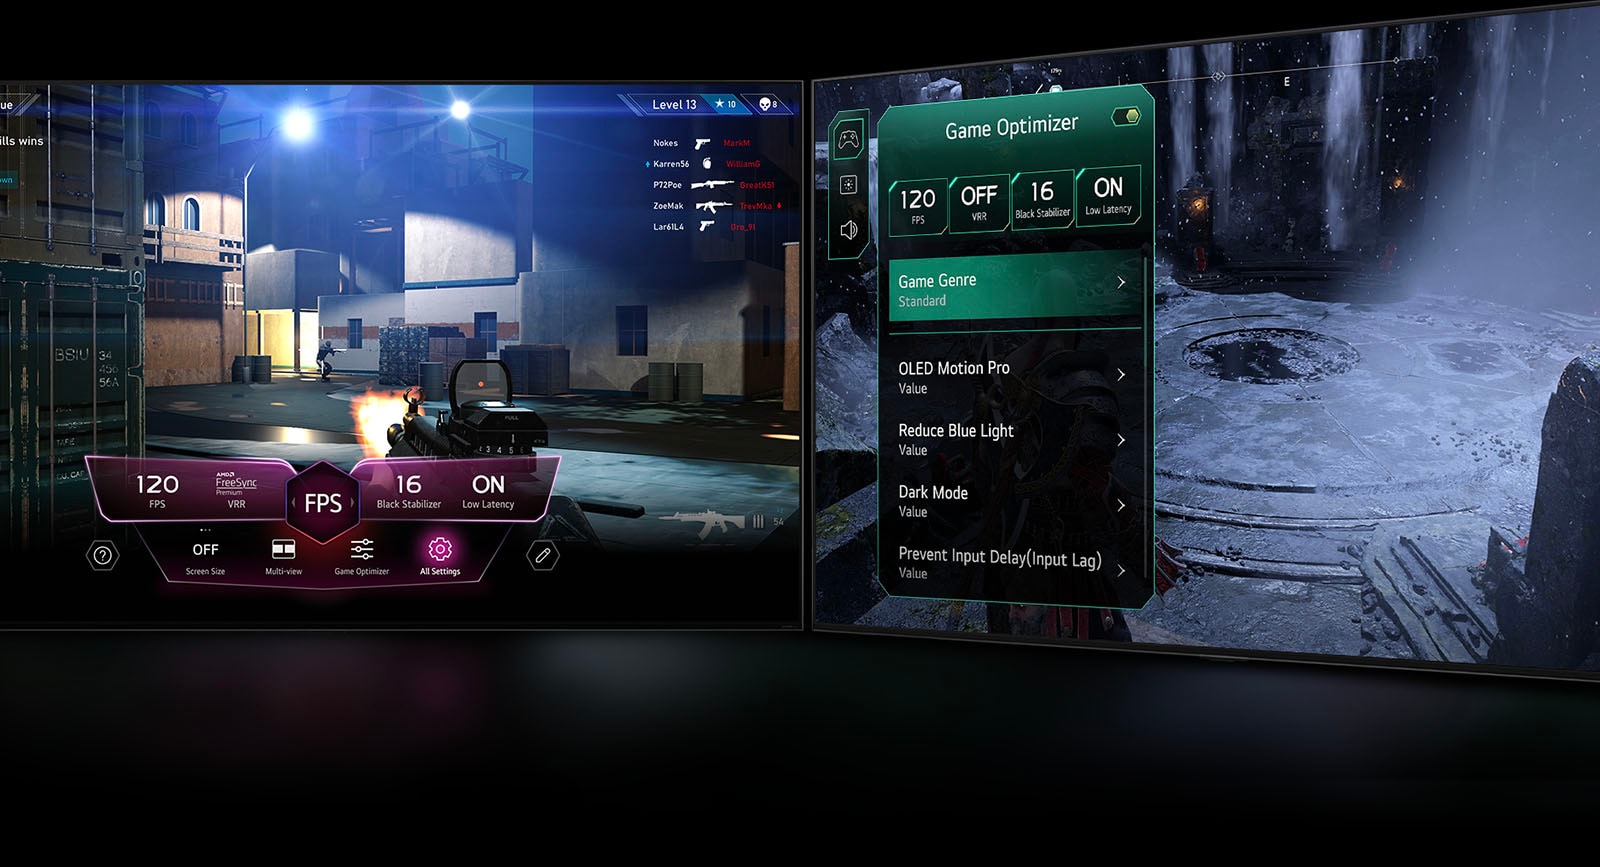 Una escena de juego FPS con el Panel de Control del Juego apareciendo sobre la pantalla durante el juego. Una escena oscura e invernal con el menú Game Optimizer apareciendo sobre el juego.